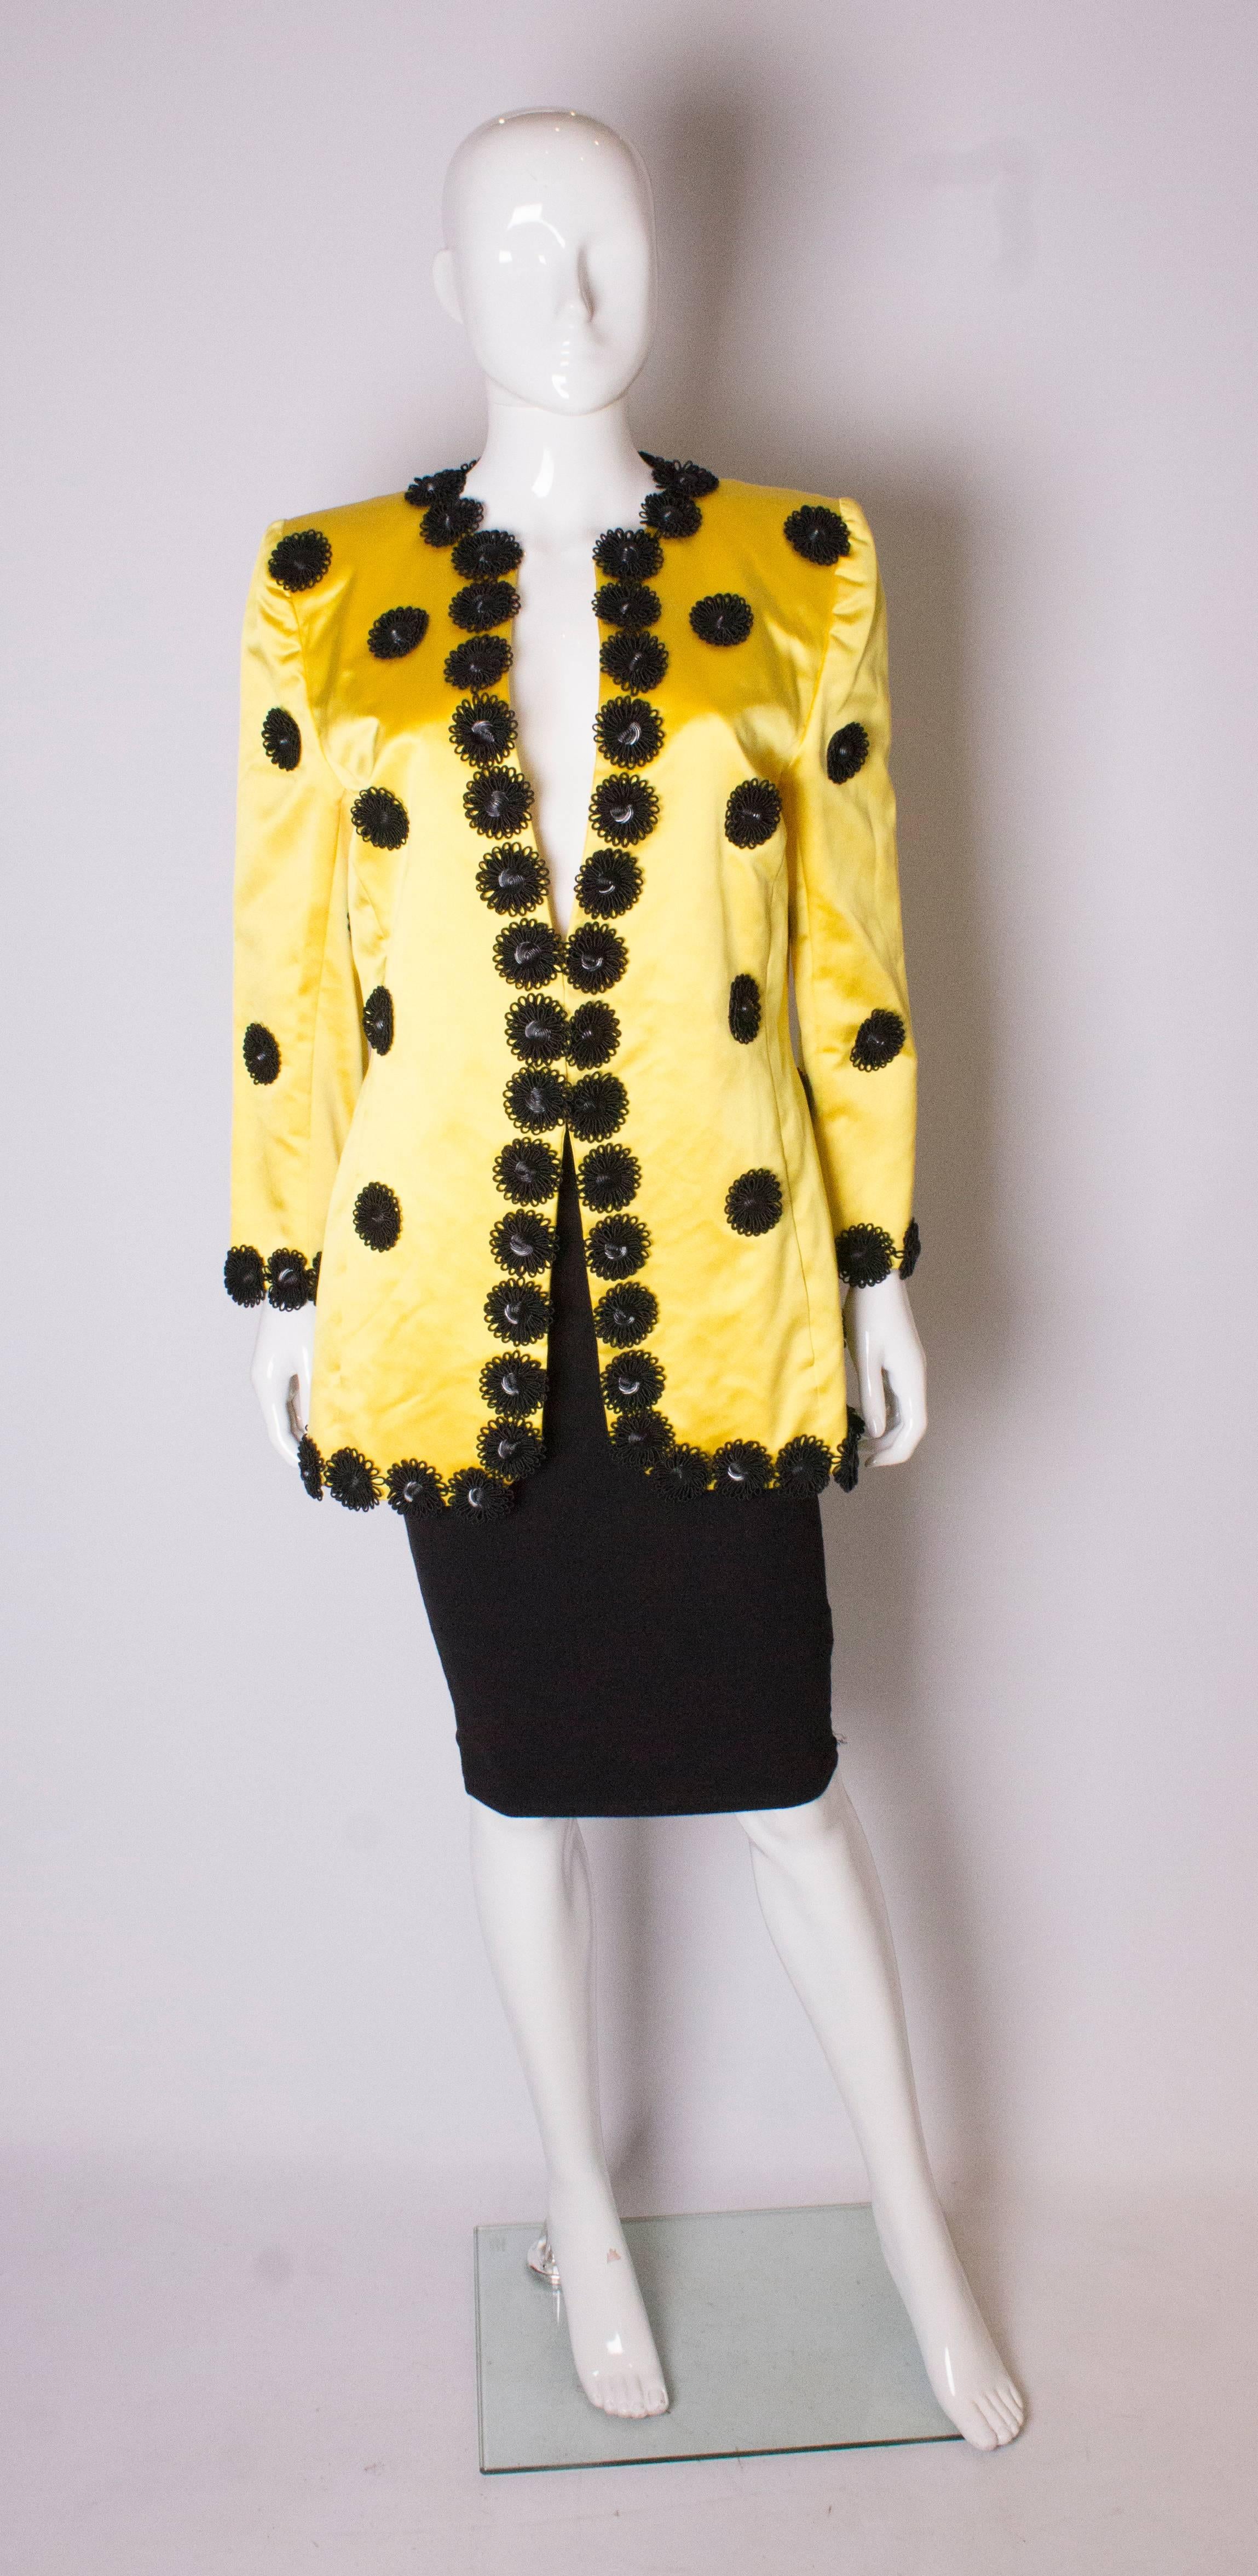 Eine tolle Vintage-Jacke für den Frühling. Die Jacke ist aus gelbem Seidensatin mit schwarzer, blumenartiger Verzierung. Sie ist vollständig gefüttert und hat auf beiden Seiten eine Tasche.